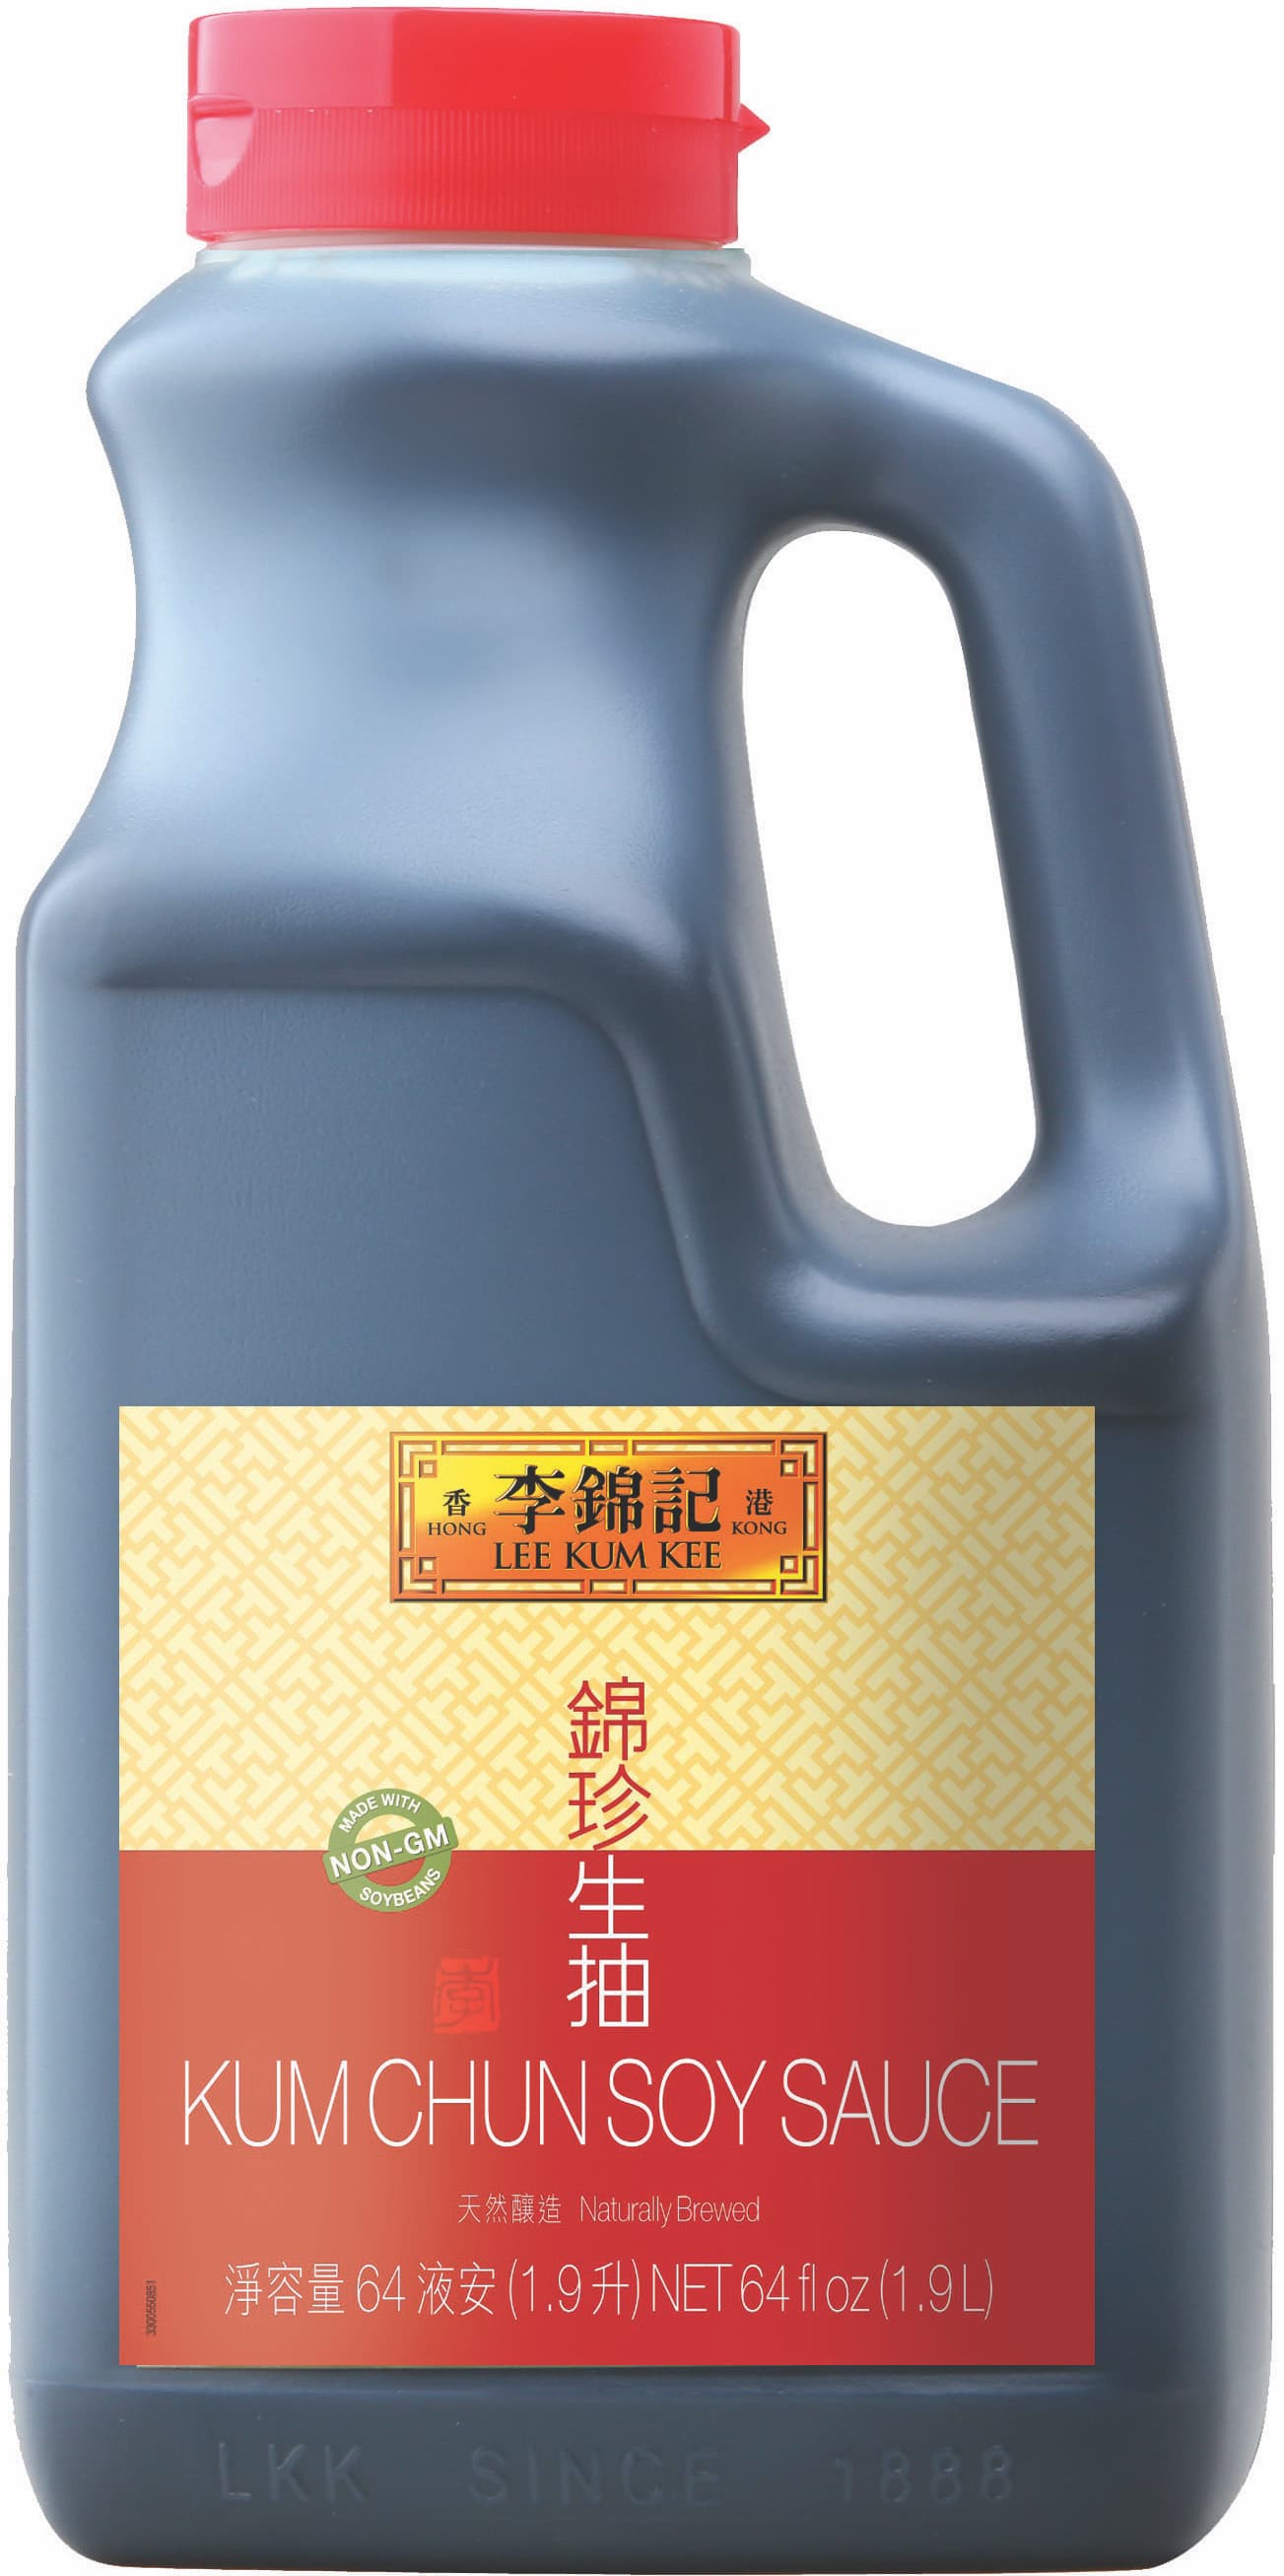 錦珍醬油 64 fl oz (1.9 L)